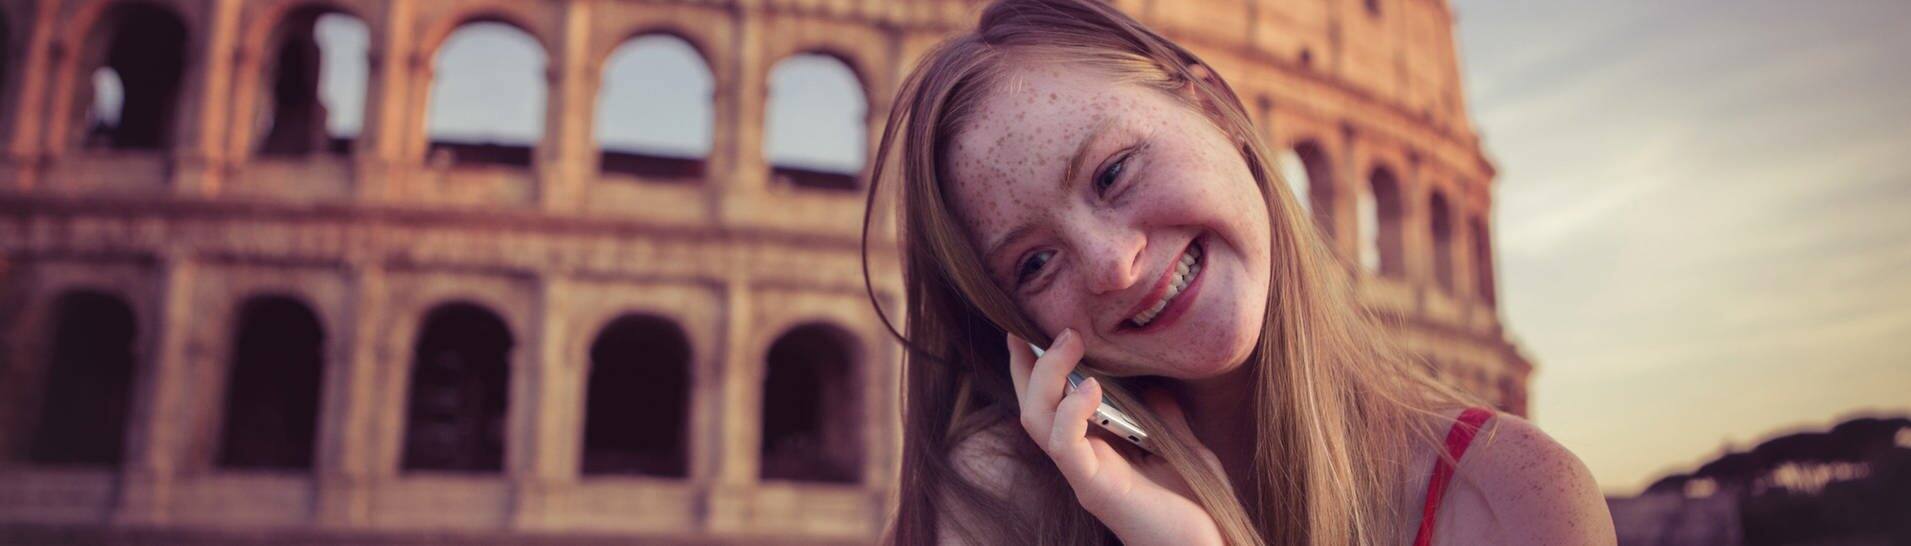 Das Tamara Röske vor dem Kolloseum in Rom telefoniert lächelnd mit einem Mobiltelefon. (Foto: Conny Wenk)